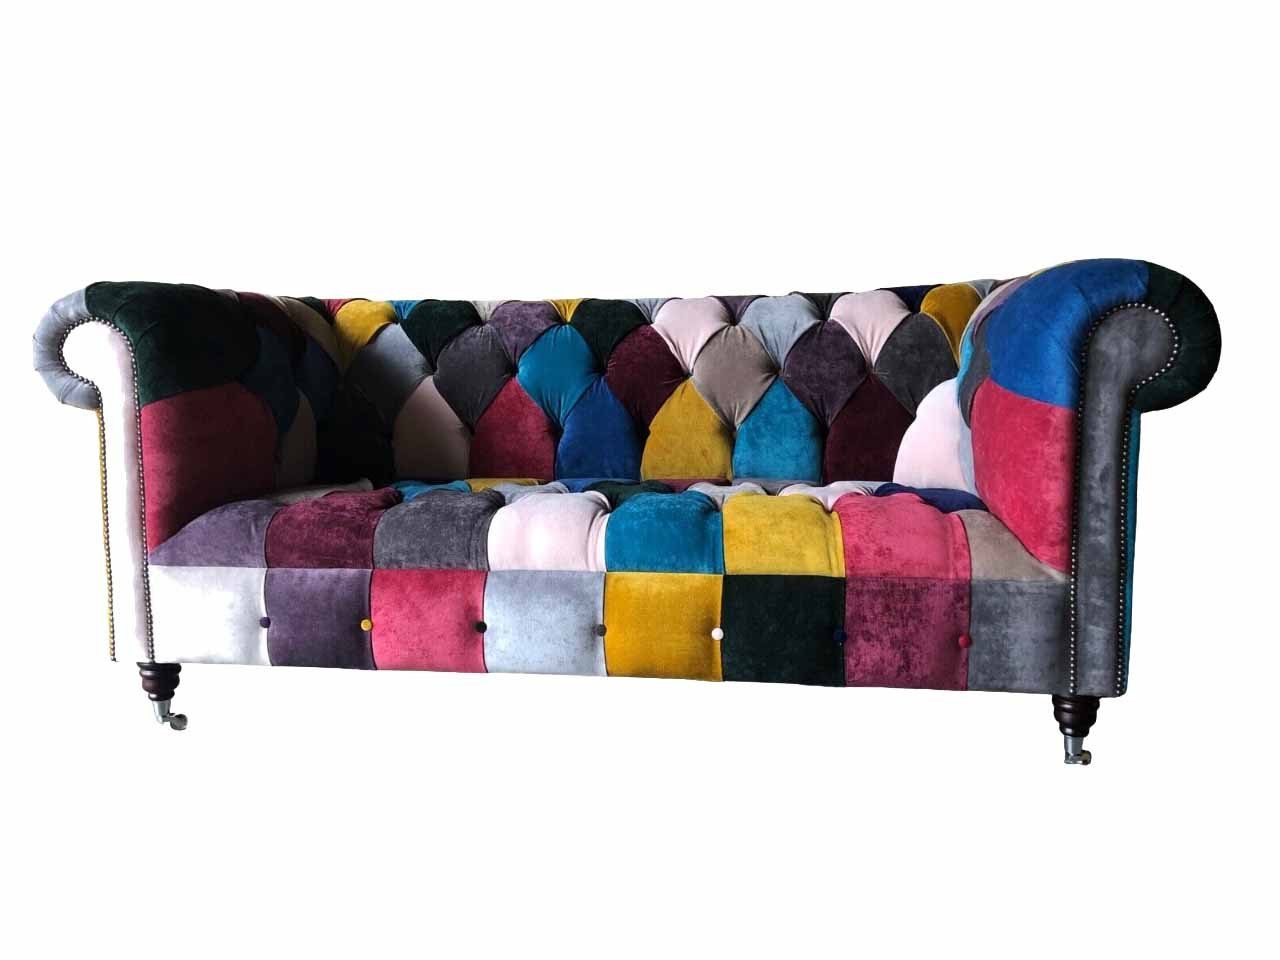 JVmoebel Chesterfield-Sofa Bunter 3-Sitzer Chesterfield Sofa Designer Wohnzimmer Couch Neu, Made in Europe